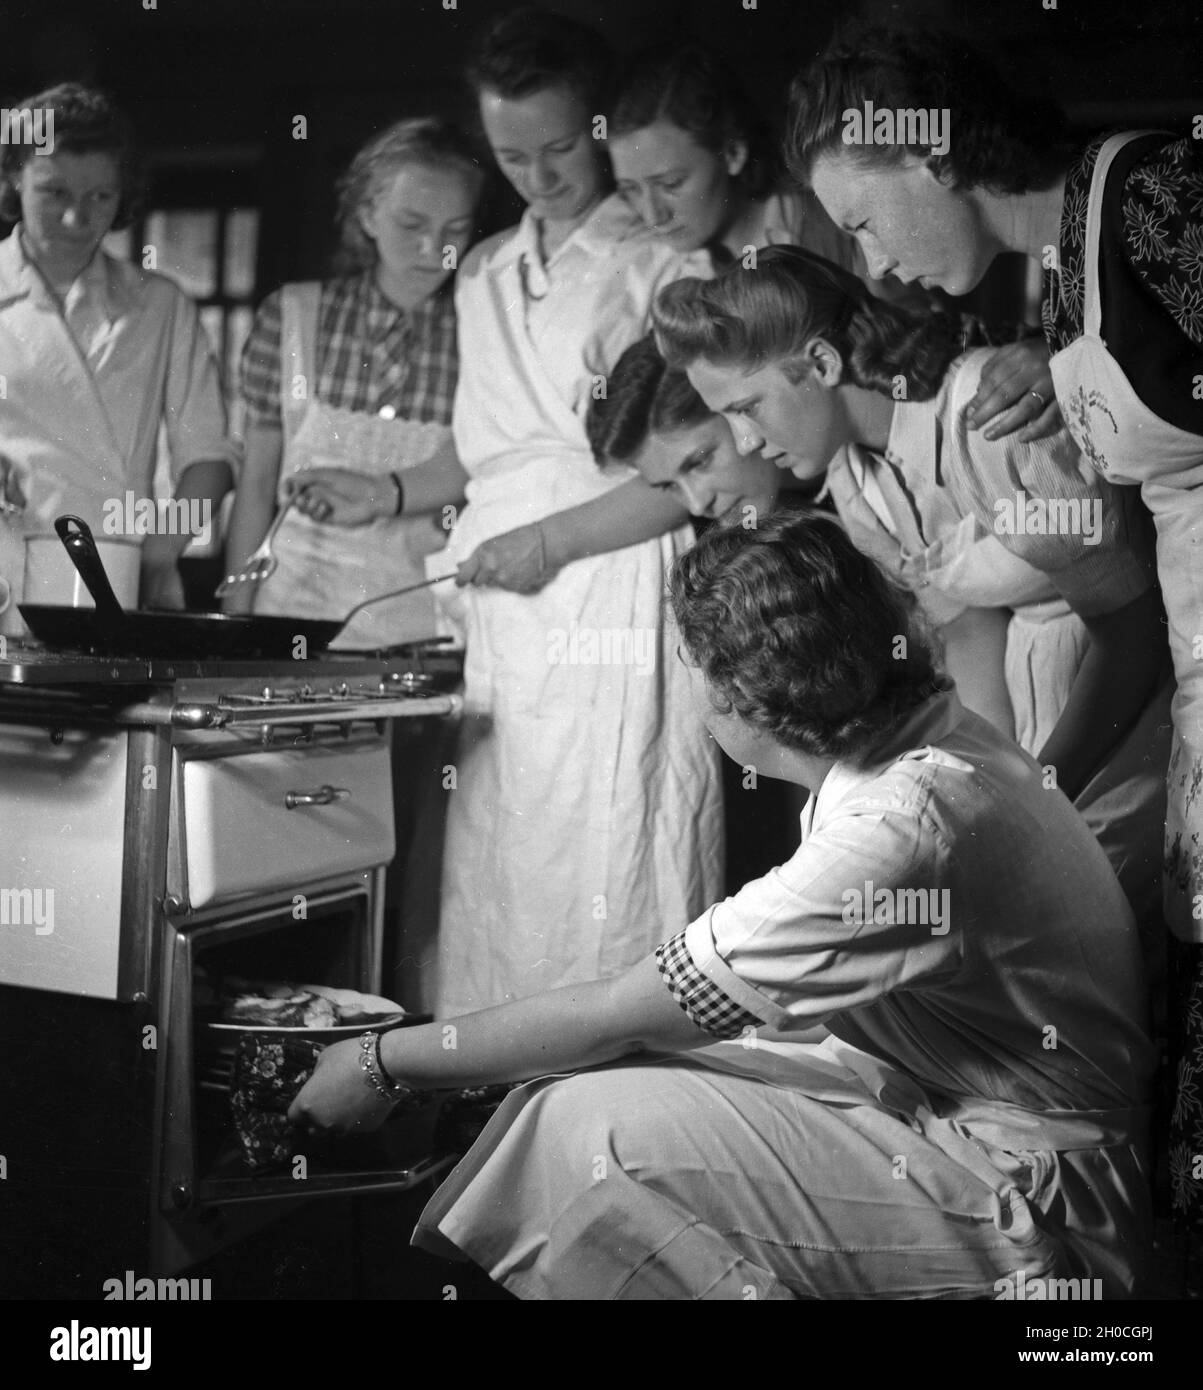 Frauen üben sich in der Hauswirtschaft in einer der BDM Arbeitsgemeinschaften 'Kochen', Deutschland 1930 Jahre. Donne che esercitano e praticano l'economia nazionale in uno dei laboratori BDM 'Kochen' ('Cooking'); Germania anni trenta. Foto Stock